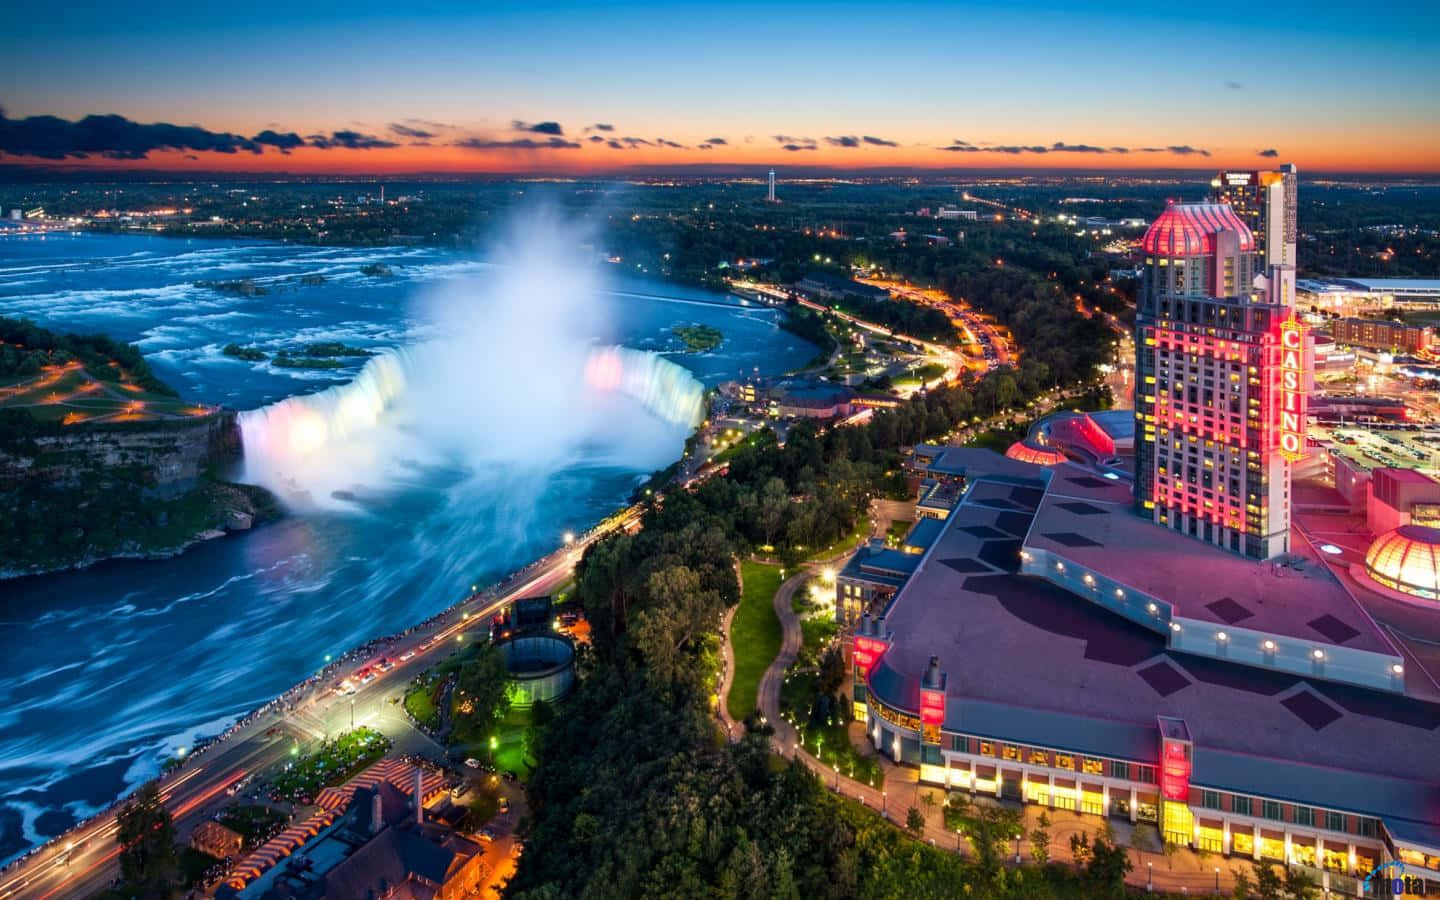 Niagara Falls And Casino At Dusk